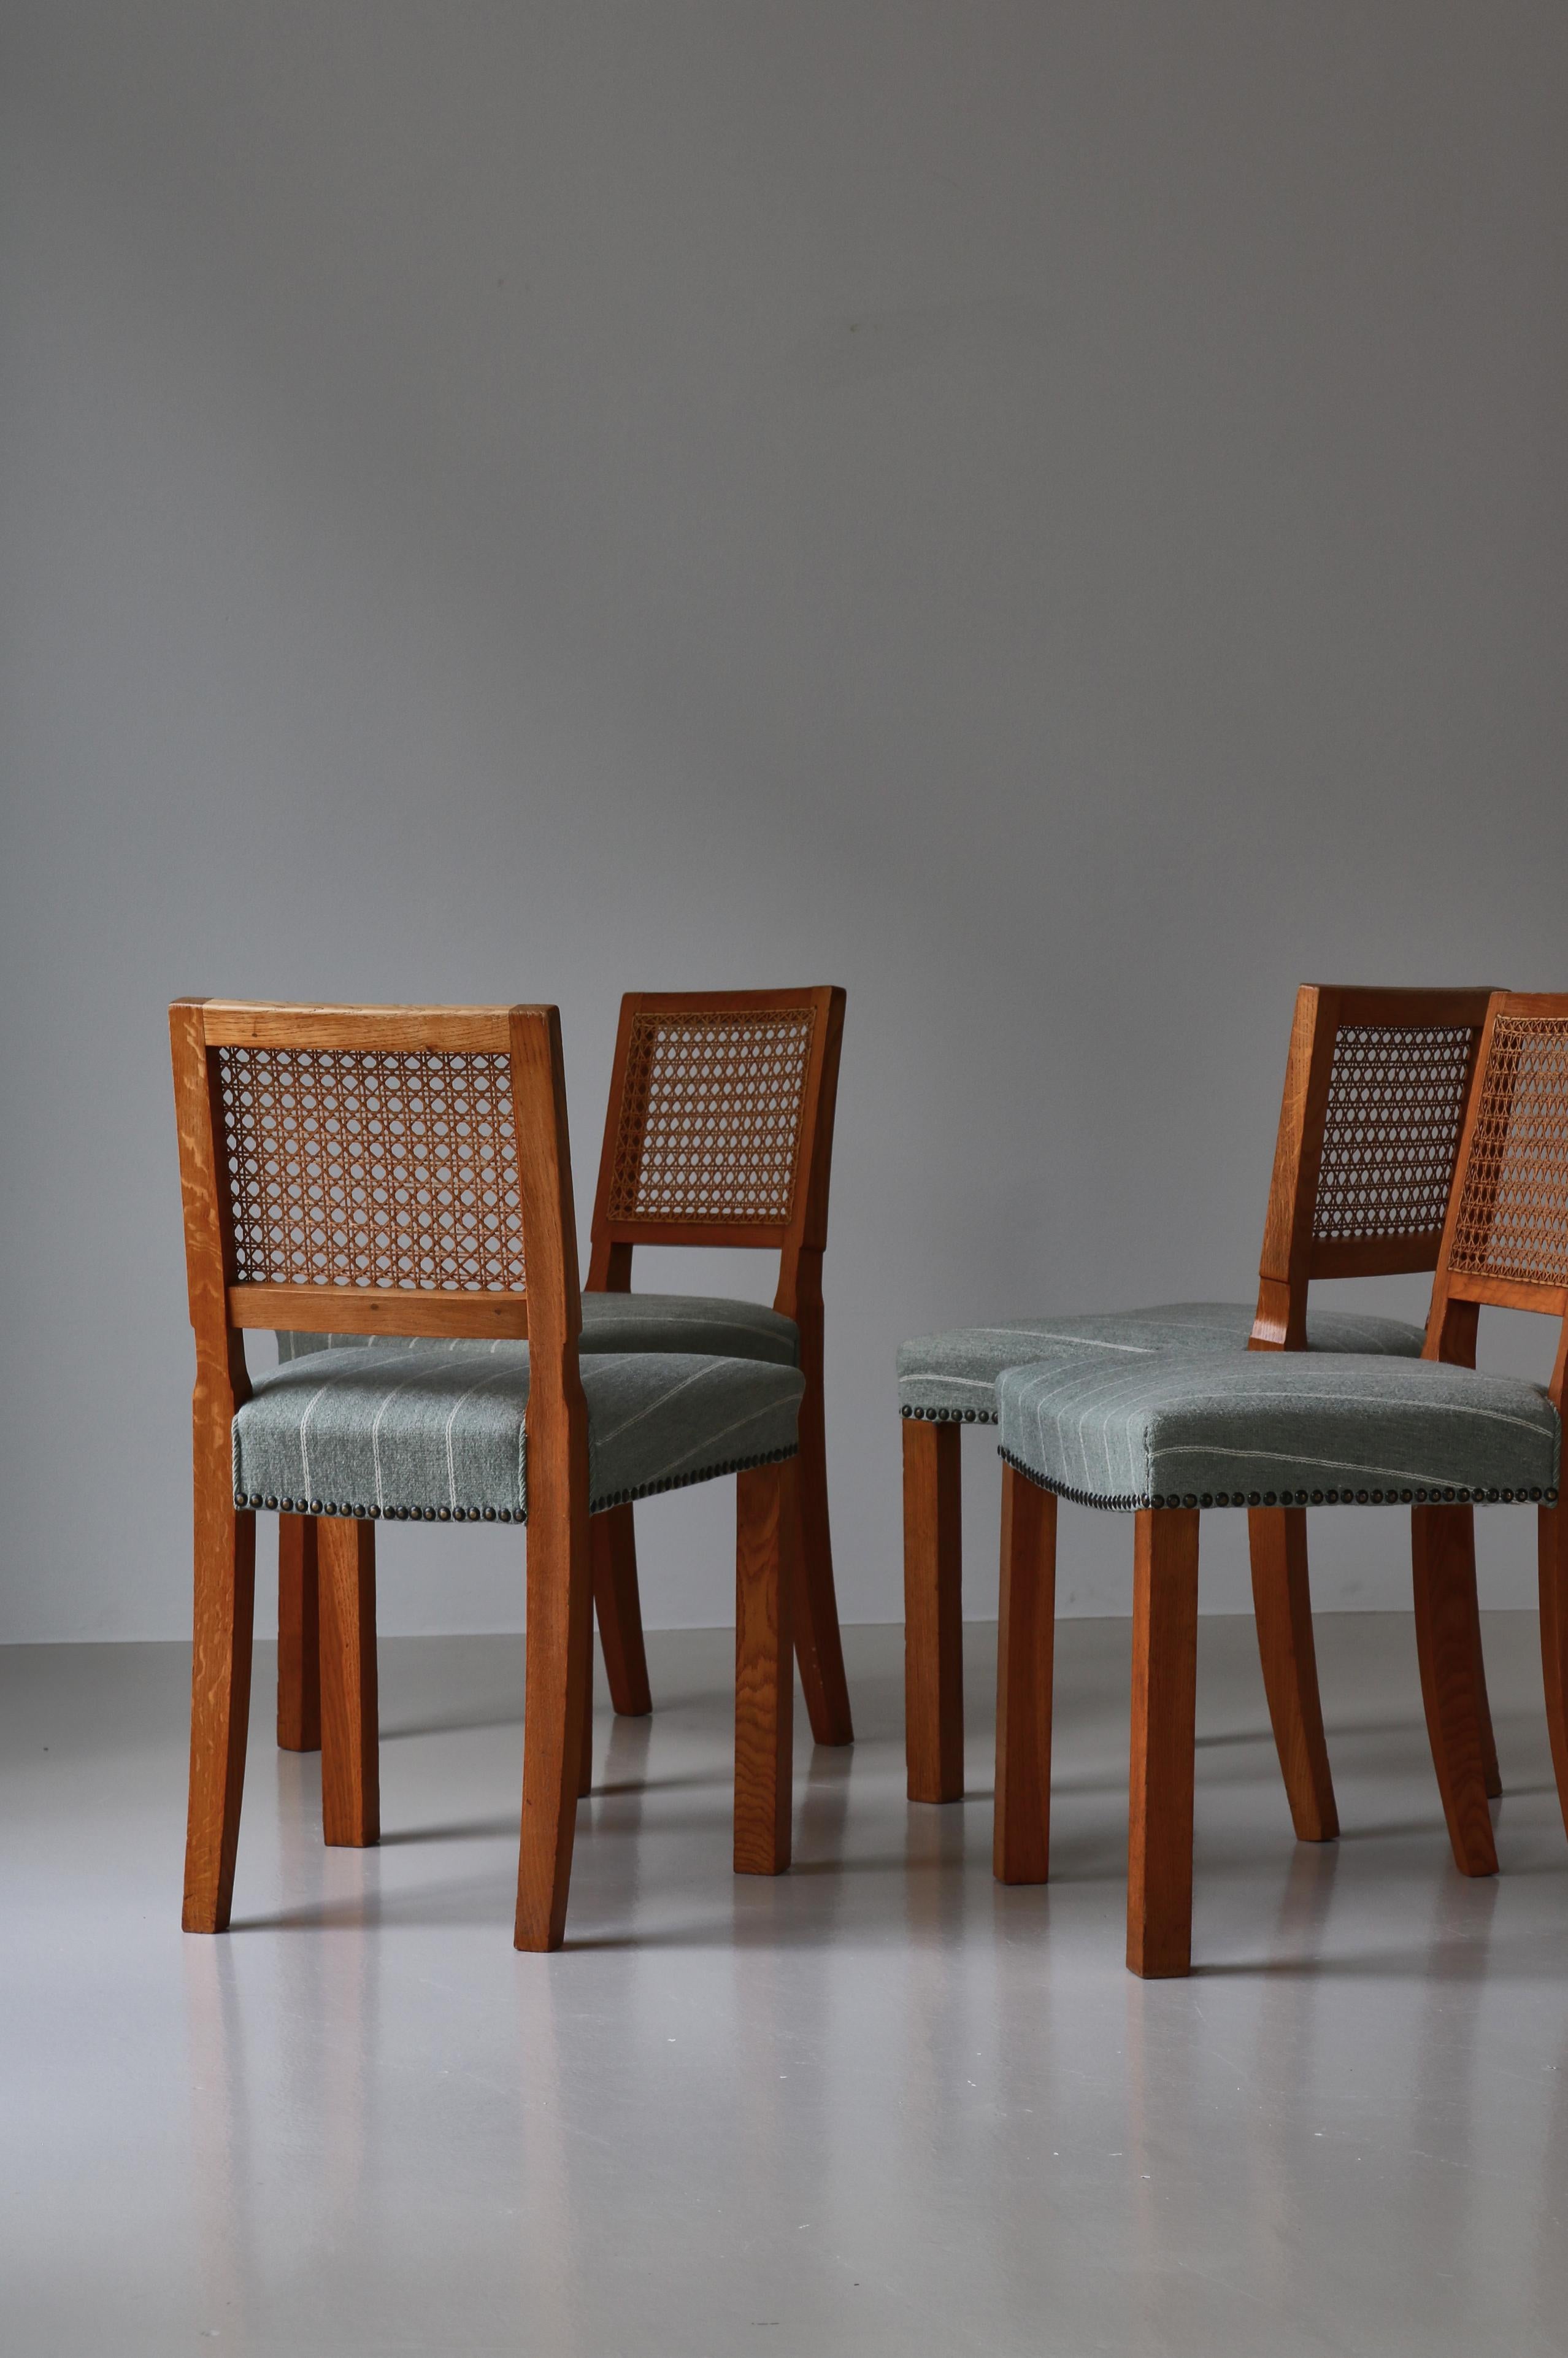 Magnifique ensemble de 4 chaises de salle à manger modernes danoises en chêne patiné et canne. Les chaises ont été fabriquées au Danemark dans les années 1940 par un ébéniste danois dans la tradition de Kaare Klint. Elles sont fabriquées en chêne